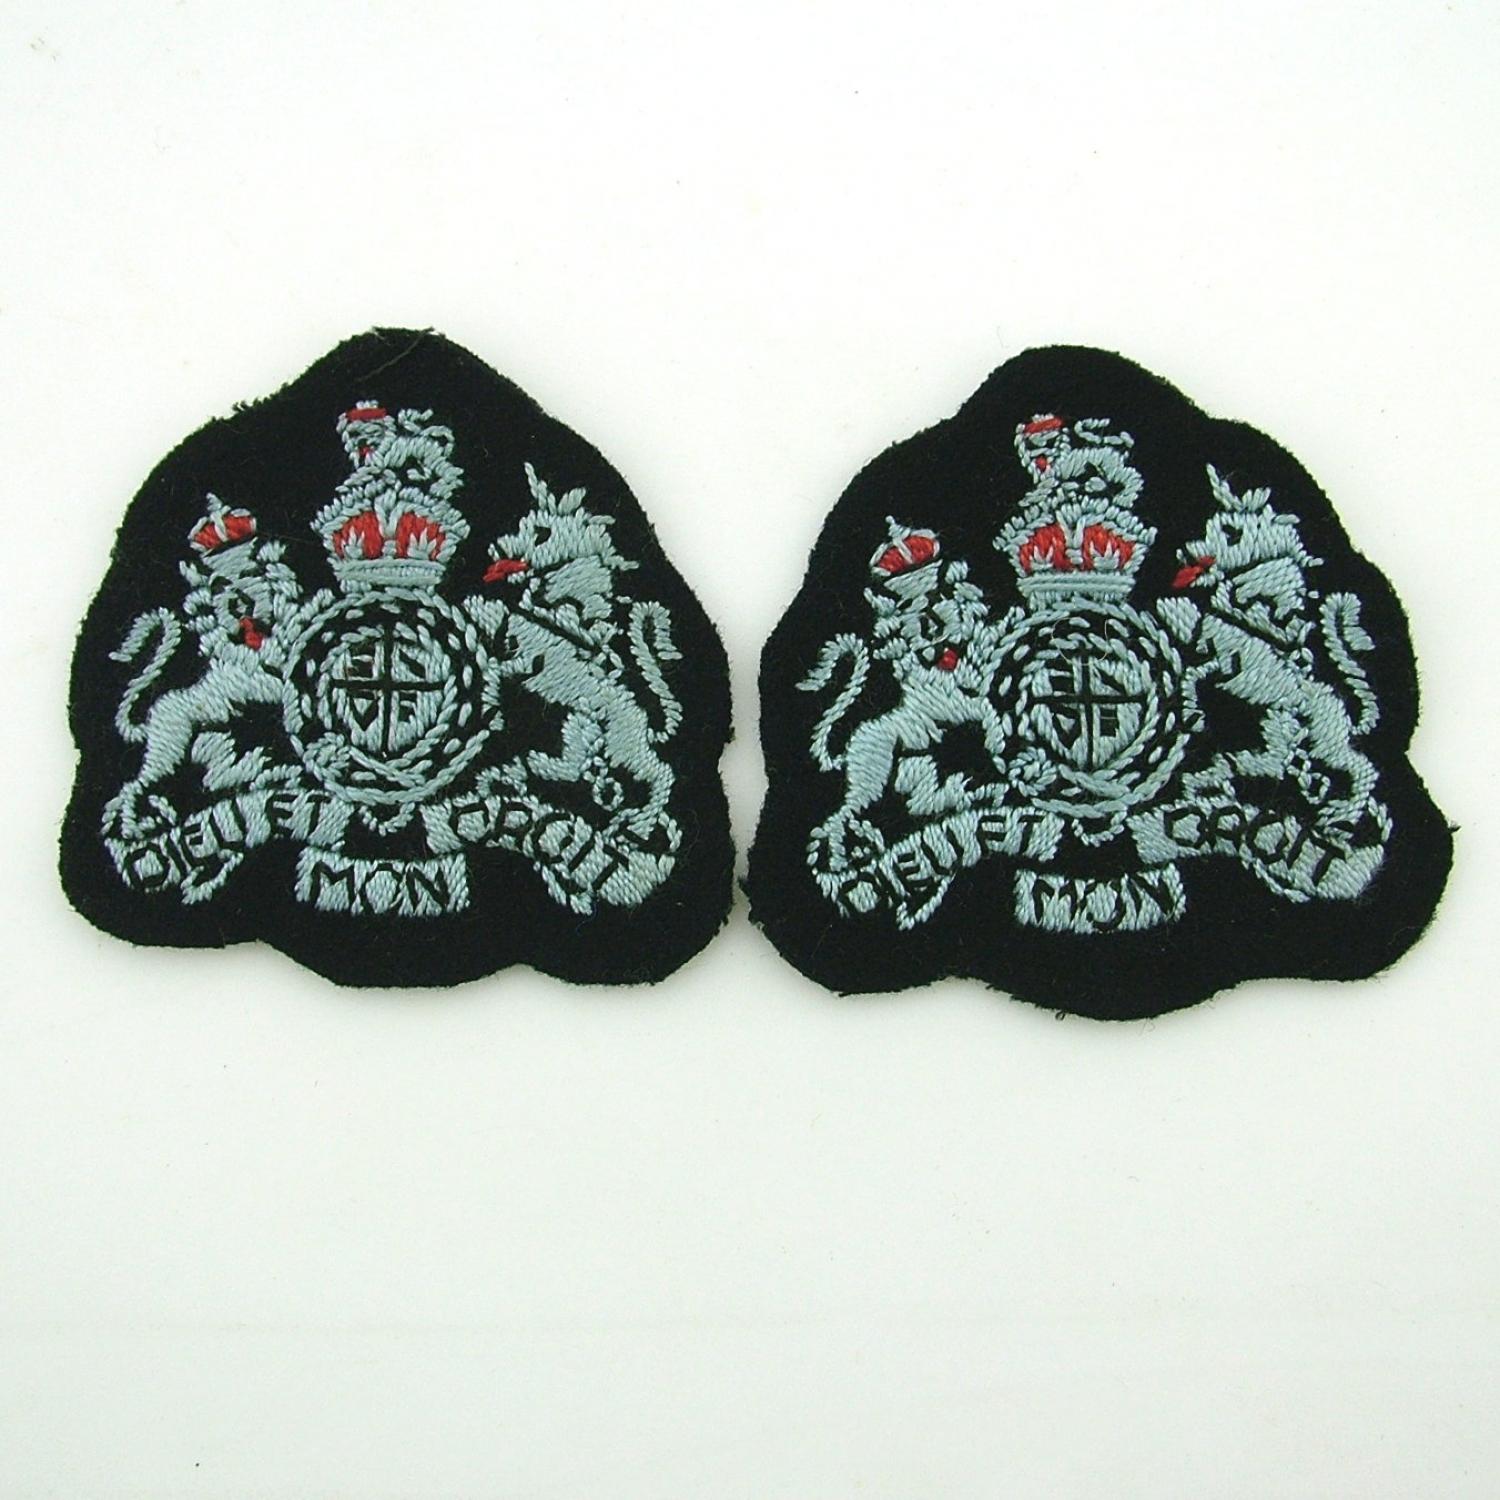 RAF warrant officer badges